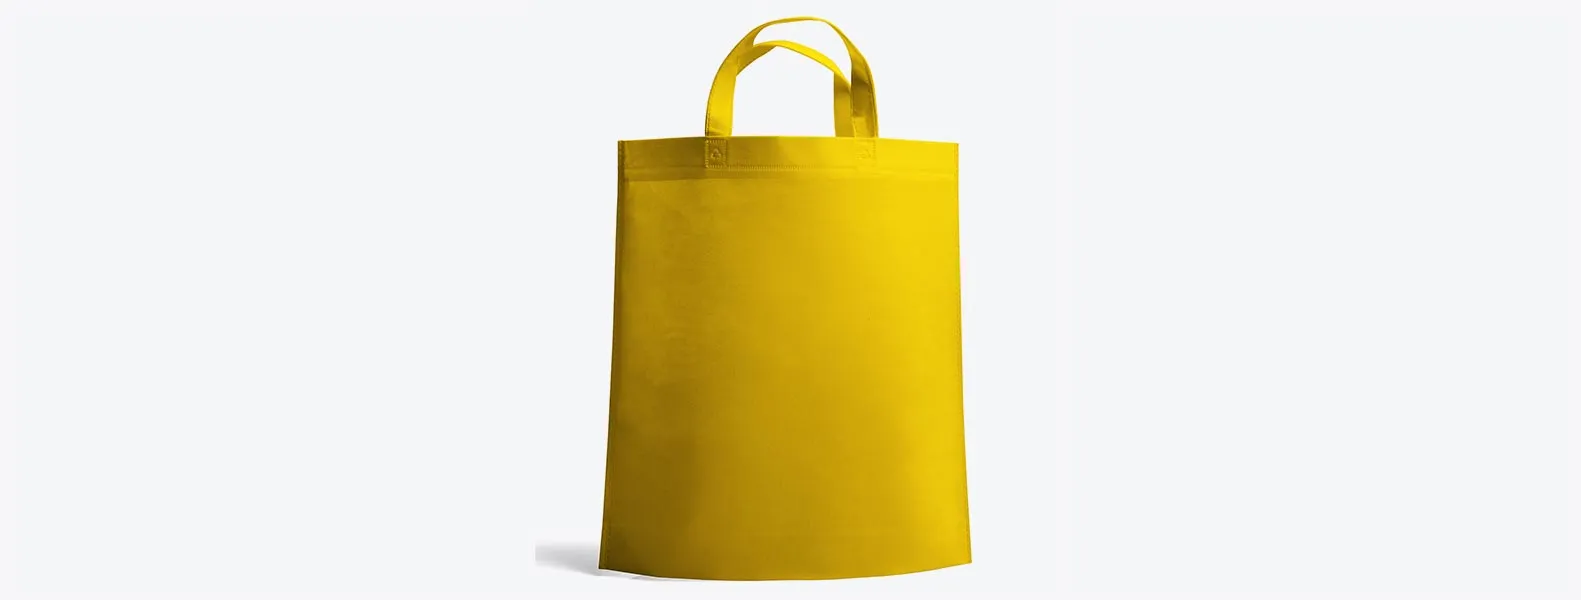 Sacola amarela em TNT termoselado com alças. Gramatura: 80 g/m² Disponível nas cores branca, preta, bege, azul, vermelha, verde, amarela, laranja, roxo e rosa.